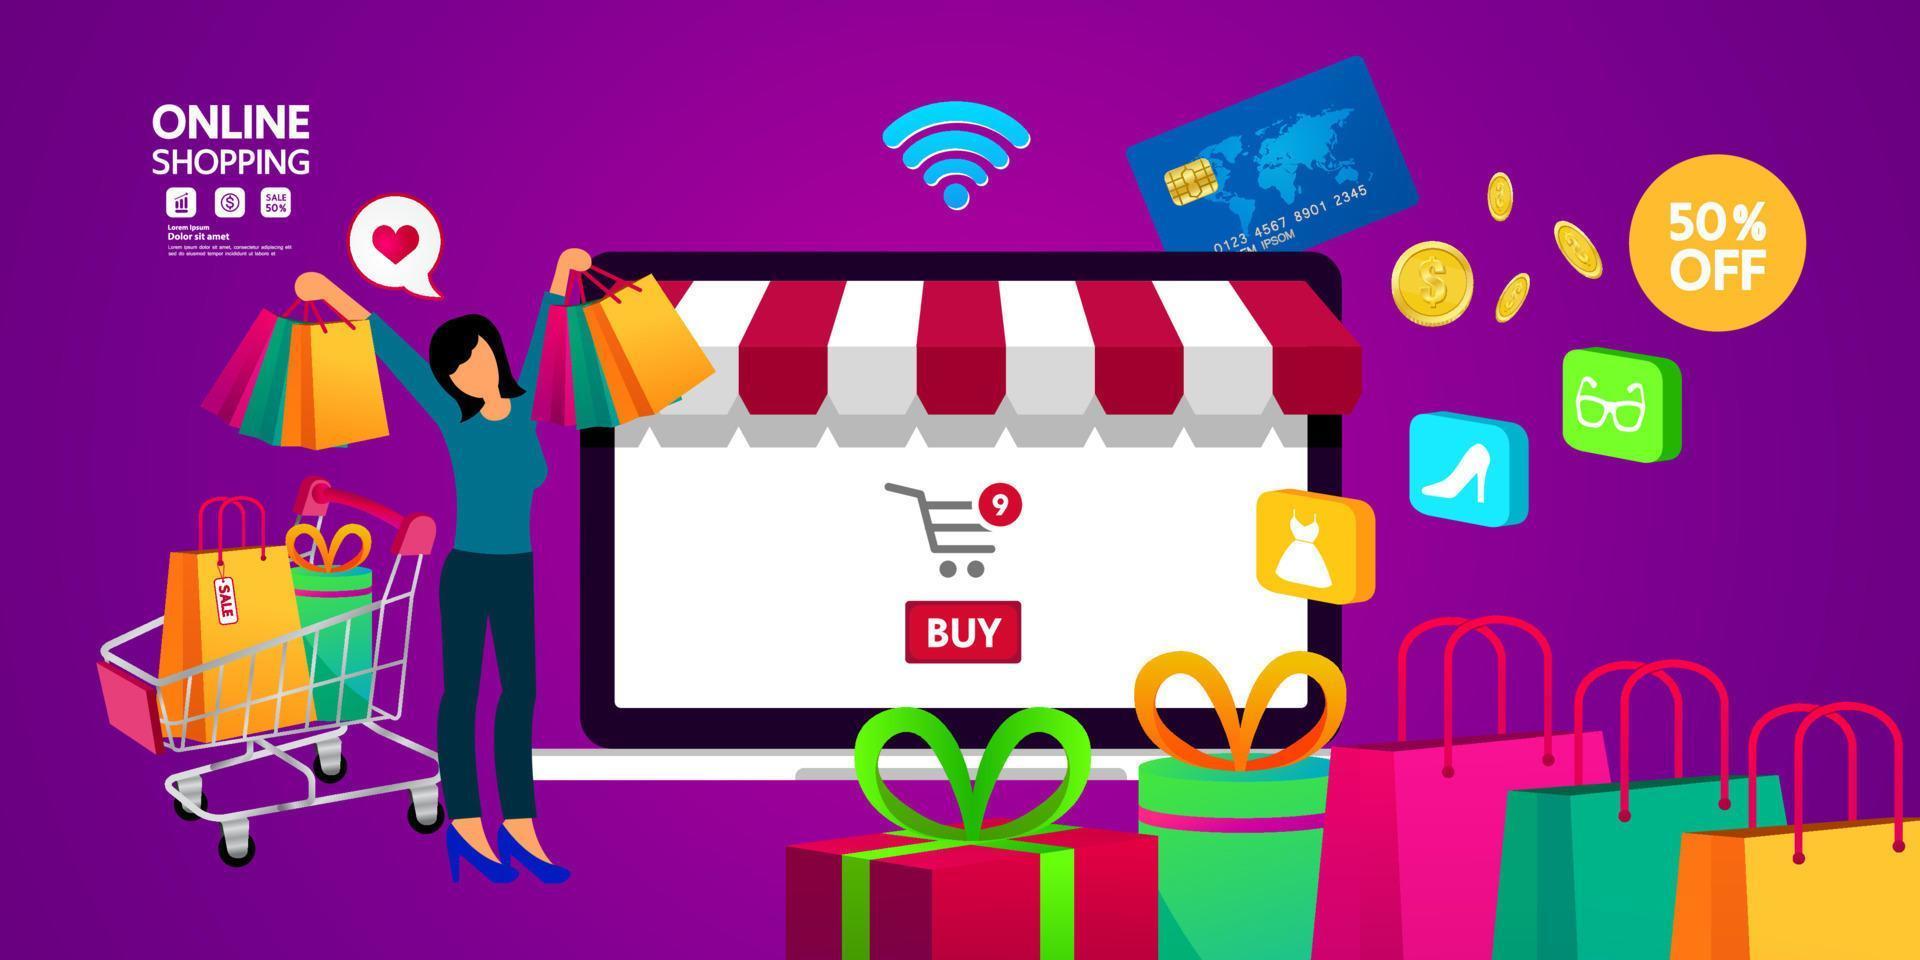 Online shopping idea vector illustration